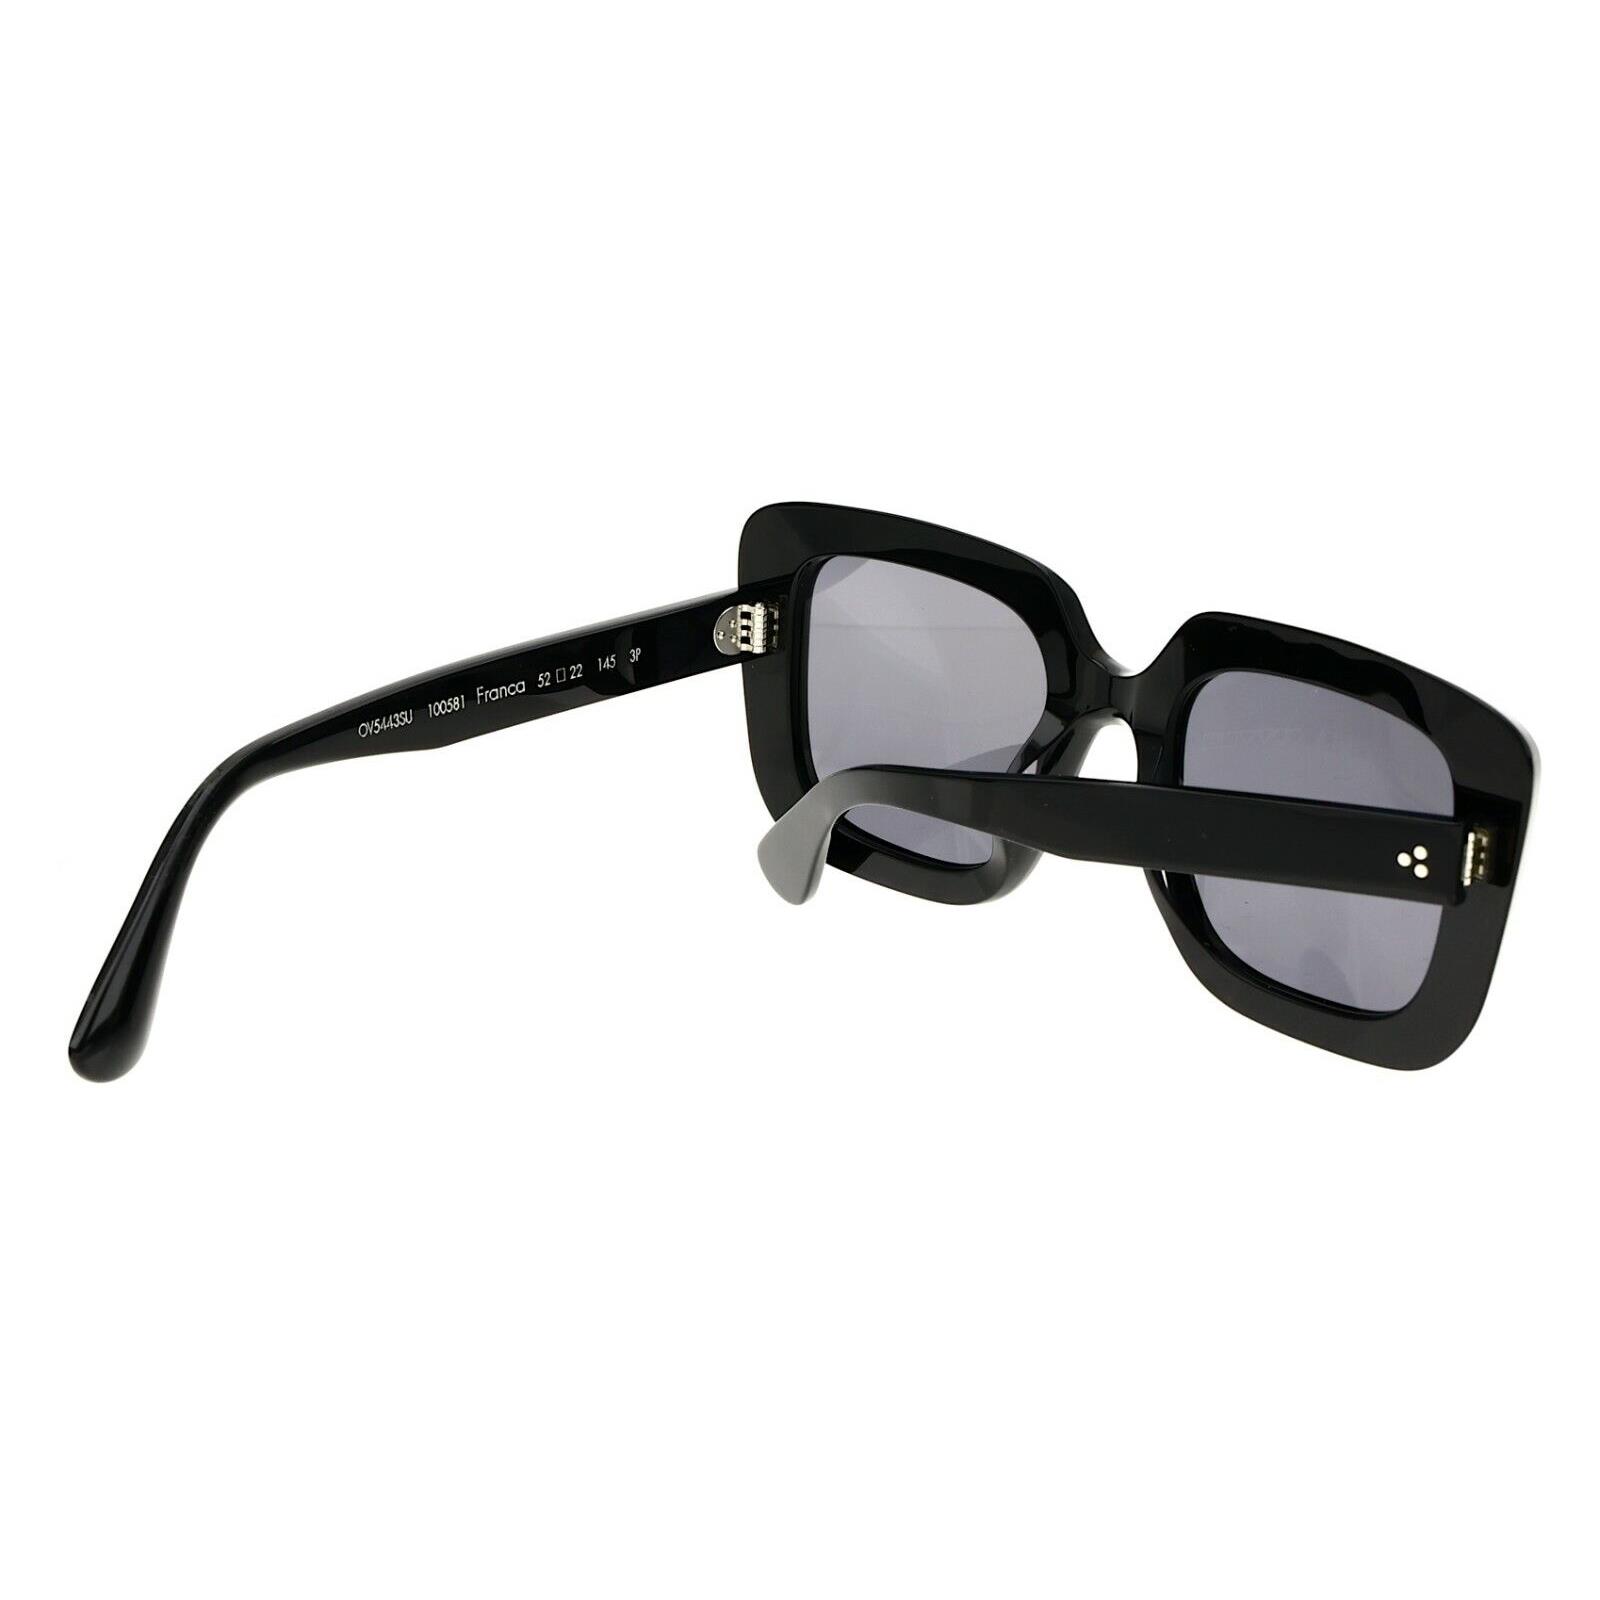 Oliver Peoples Franca 52mm Polarized Black Oversized Square Sunglasses  S3021 - Oliver Peoples sunglasses - 827934451391 | Fash Brands